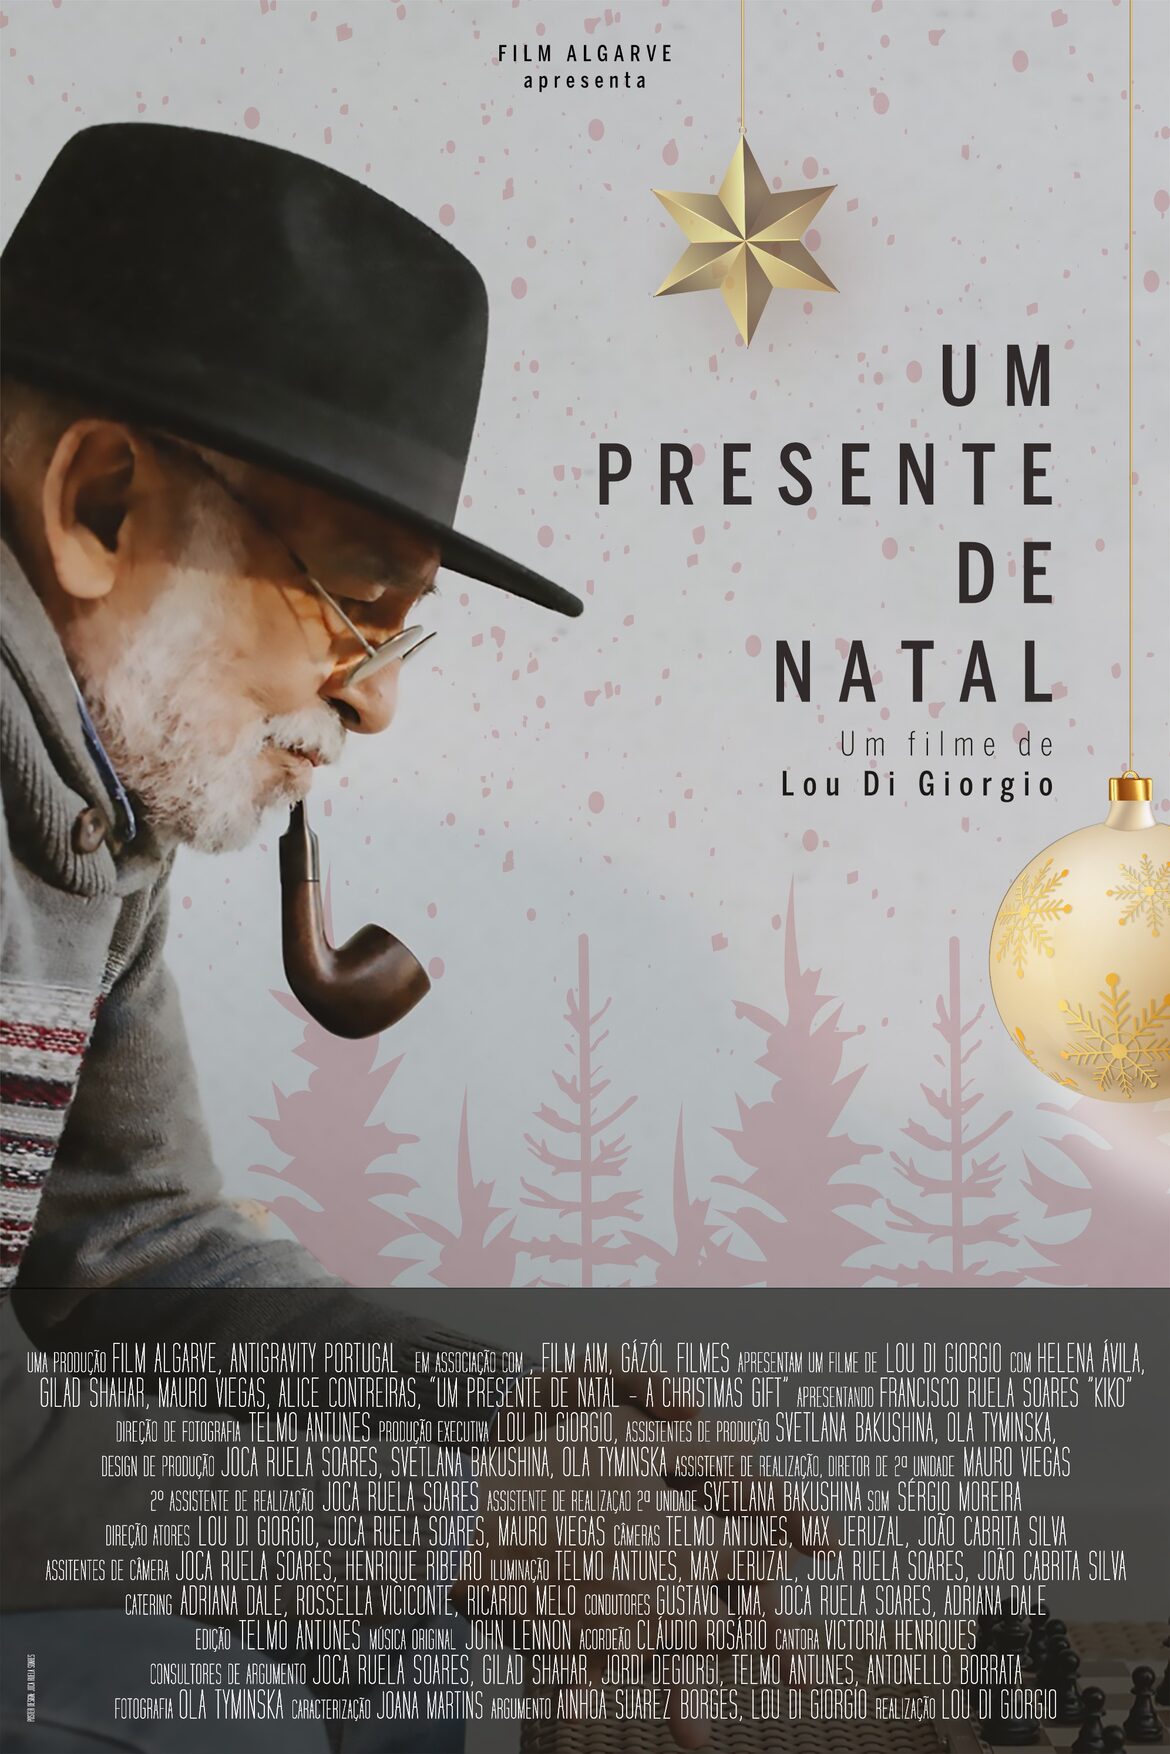 Um Presente de Natal - A Christmas Gift - A Lou Di Giorgio film